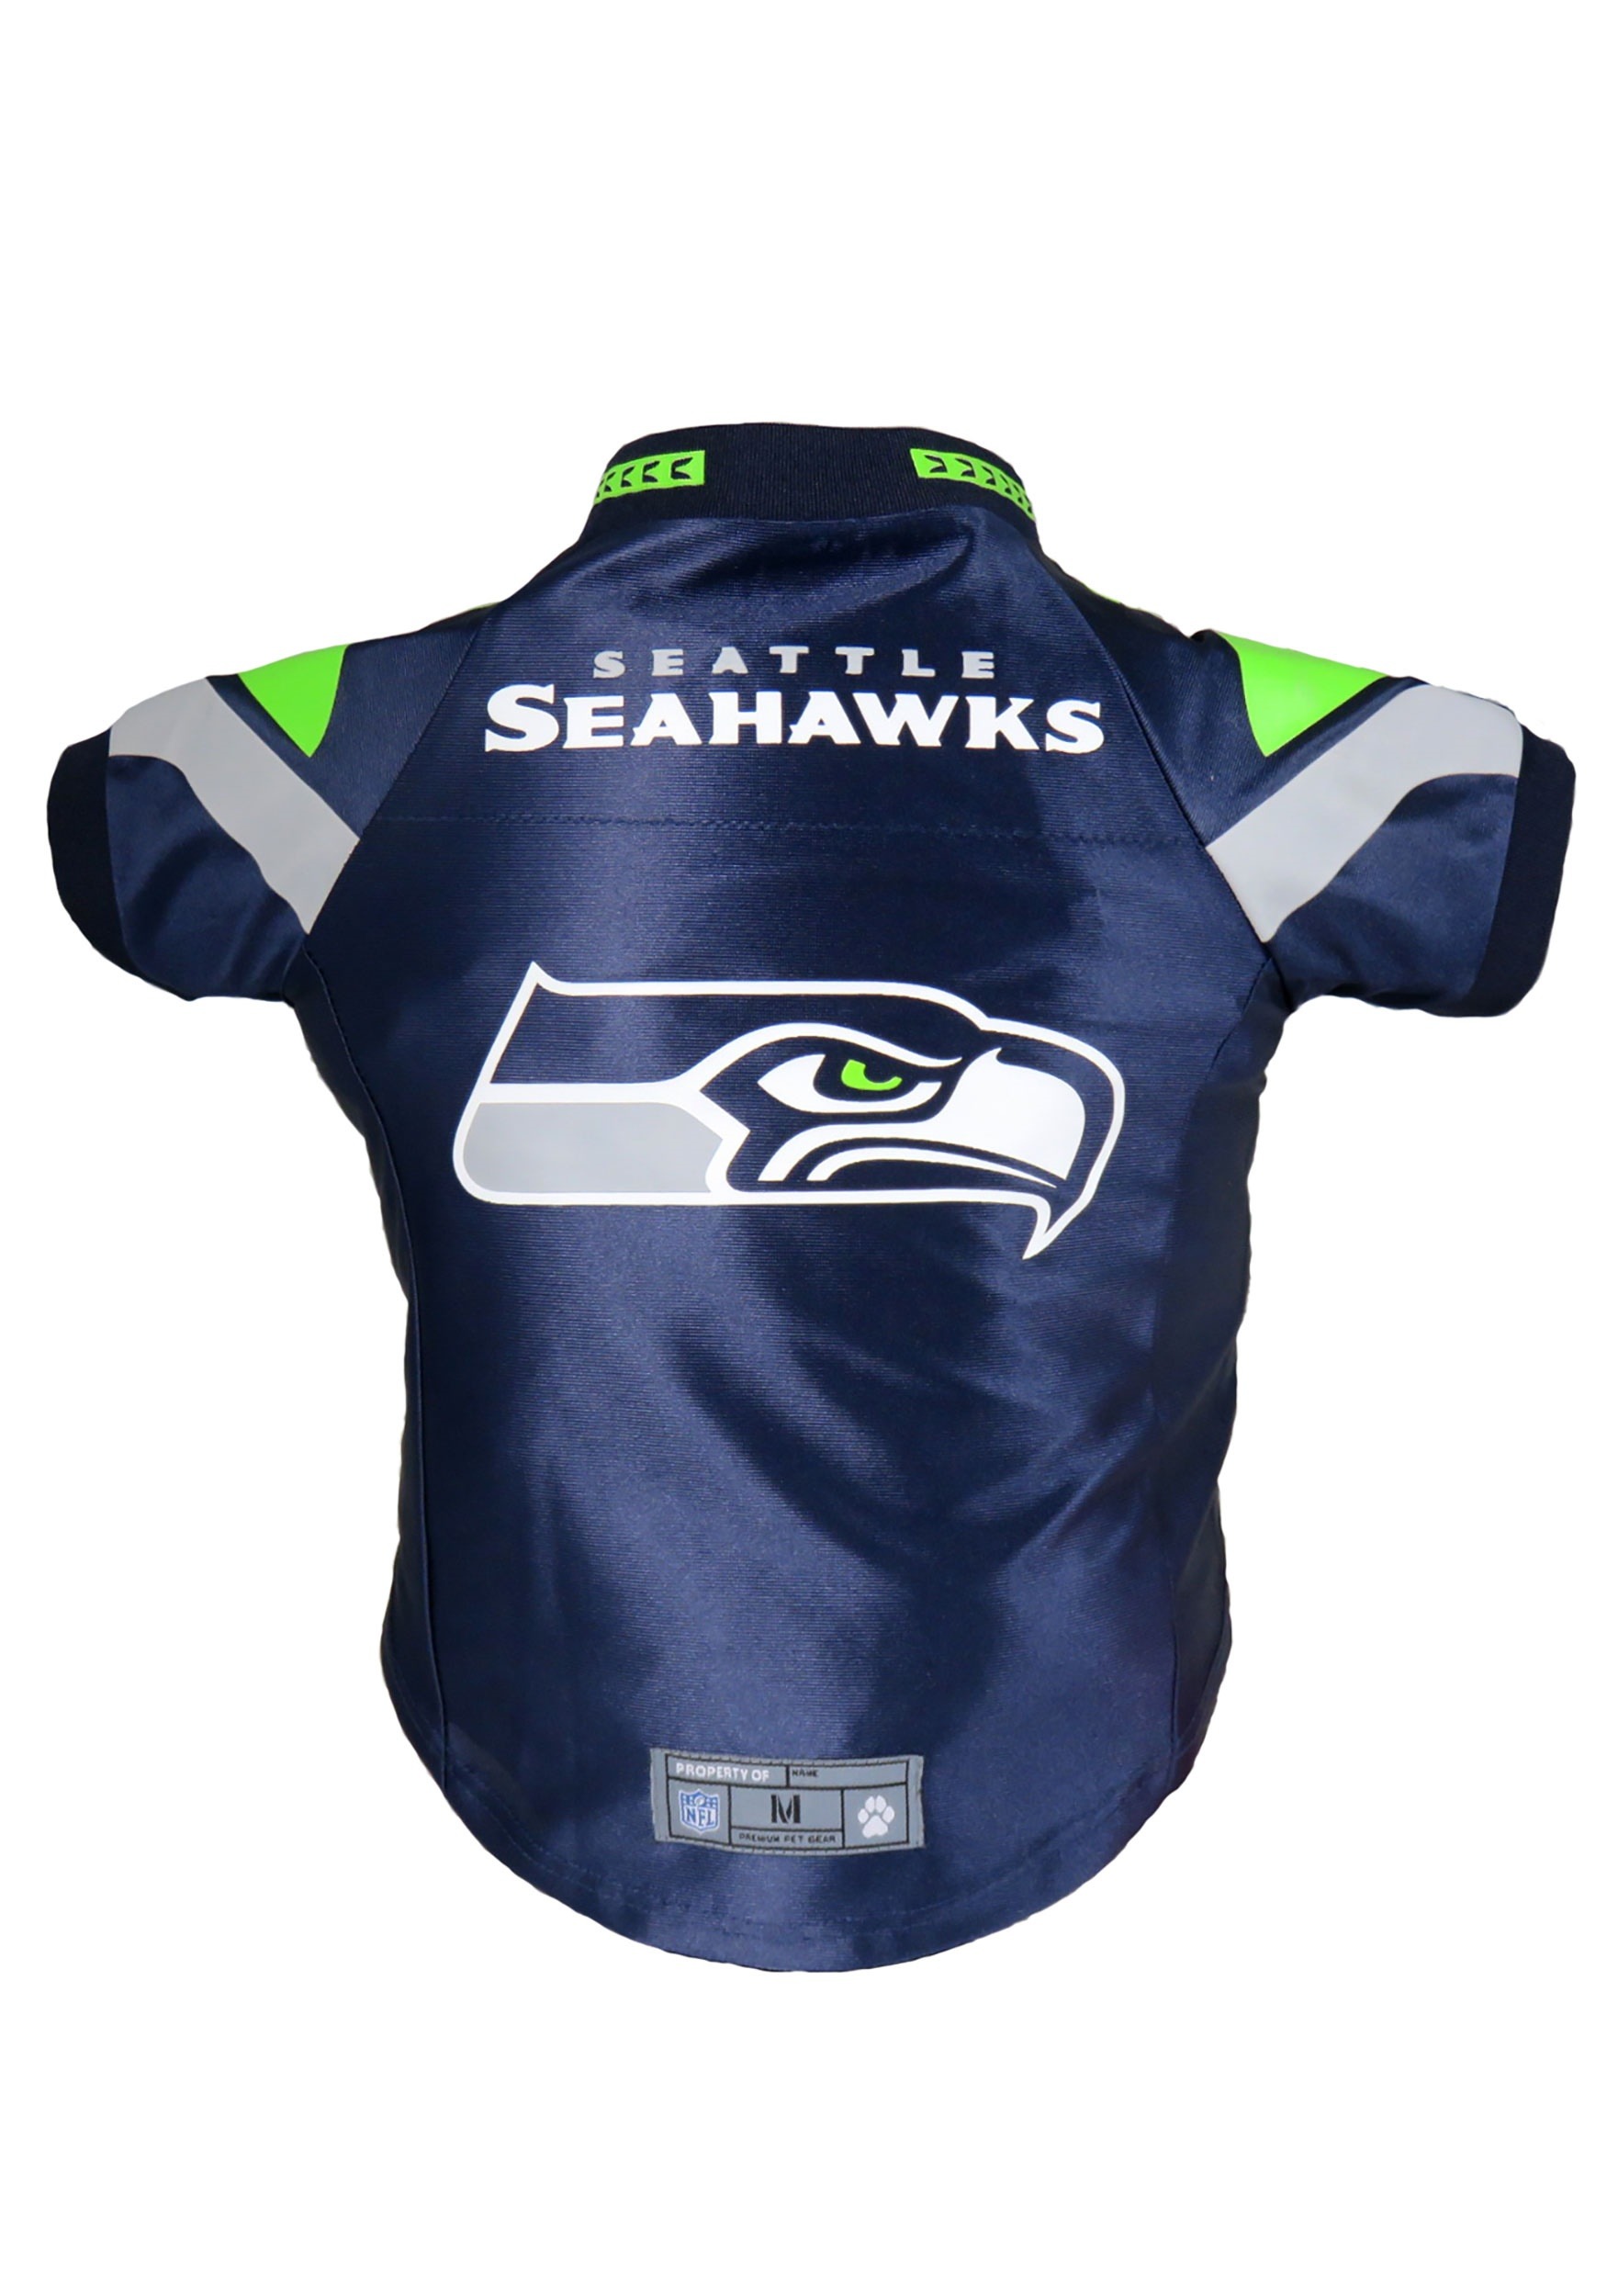 seahawks jerseys seattle